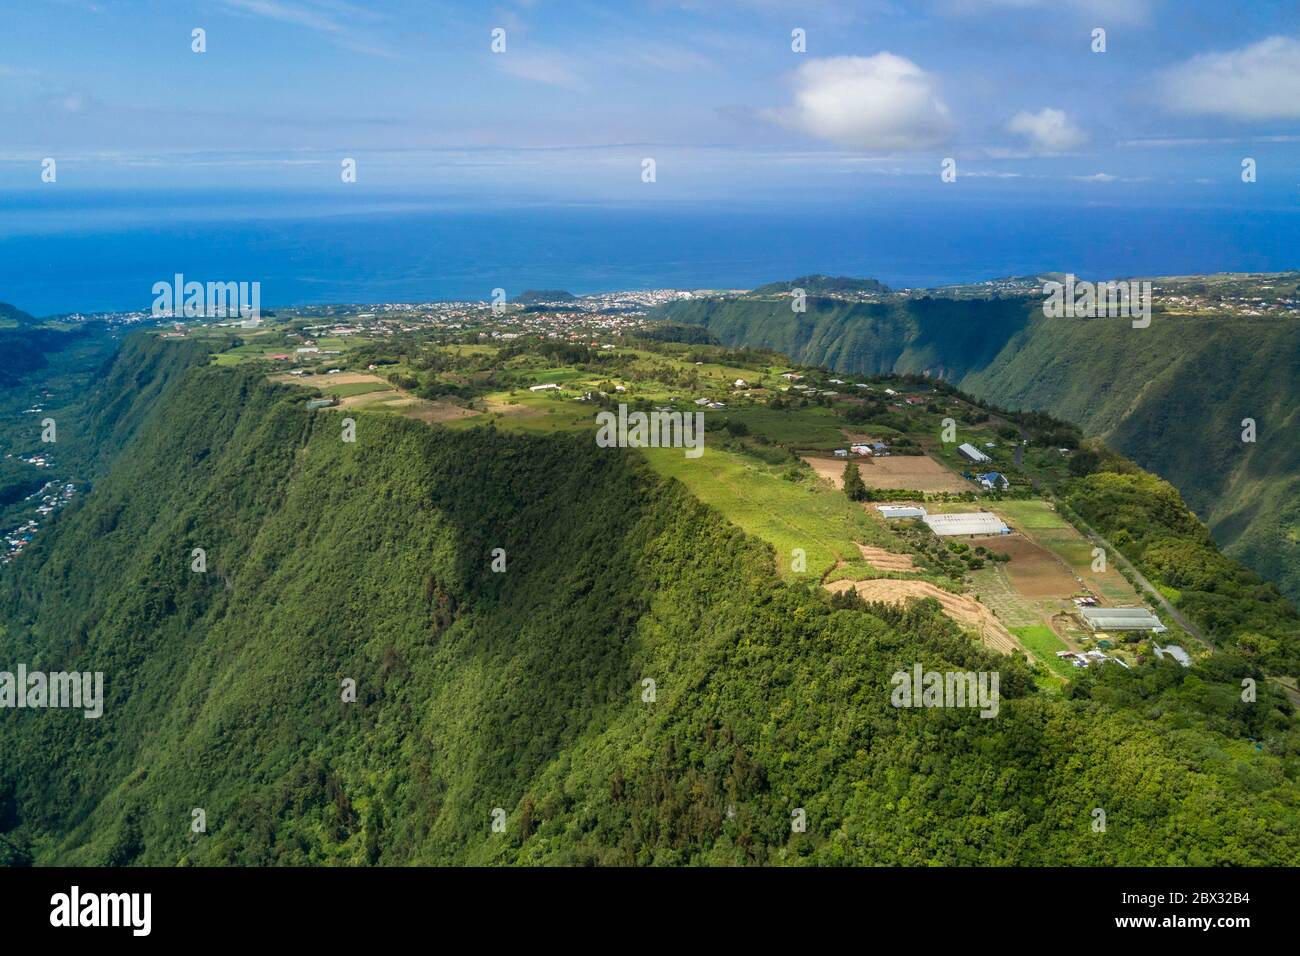 Frankreich, Réunion (französische Überseeabteilung), Saint Joseph, Grand-Coude, Hochebene zwischen dem Remparts-Fluss im Westen (rechts) und dem Langevin-Fluss im Osten (links) (Luftaufnahme) Stockfoto